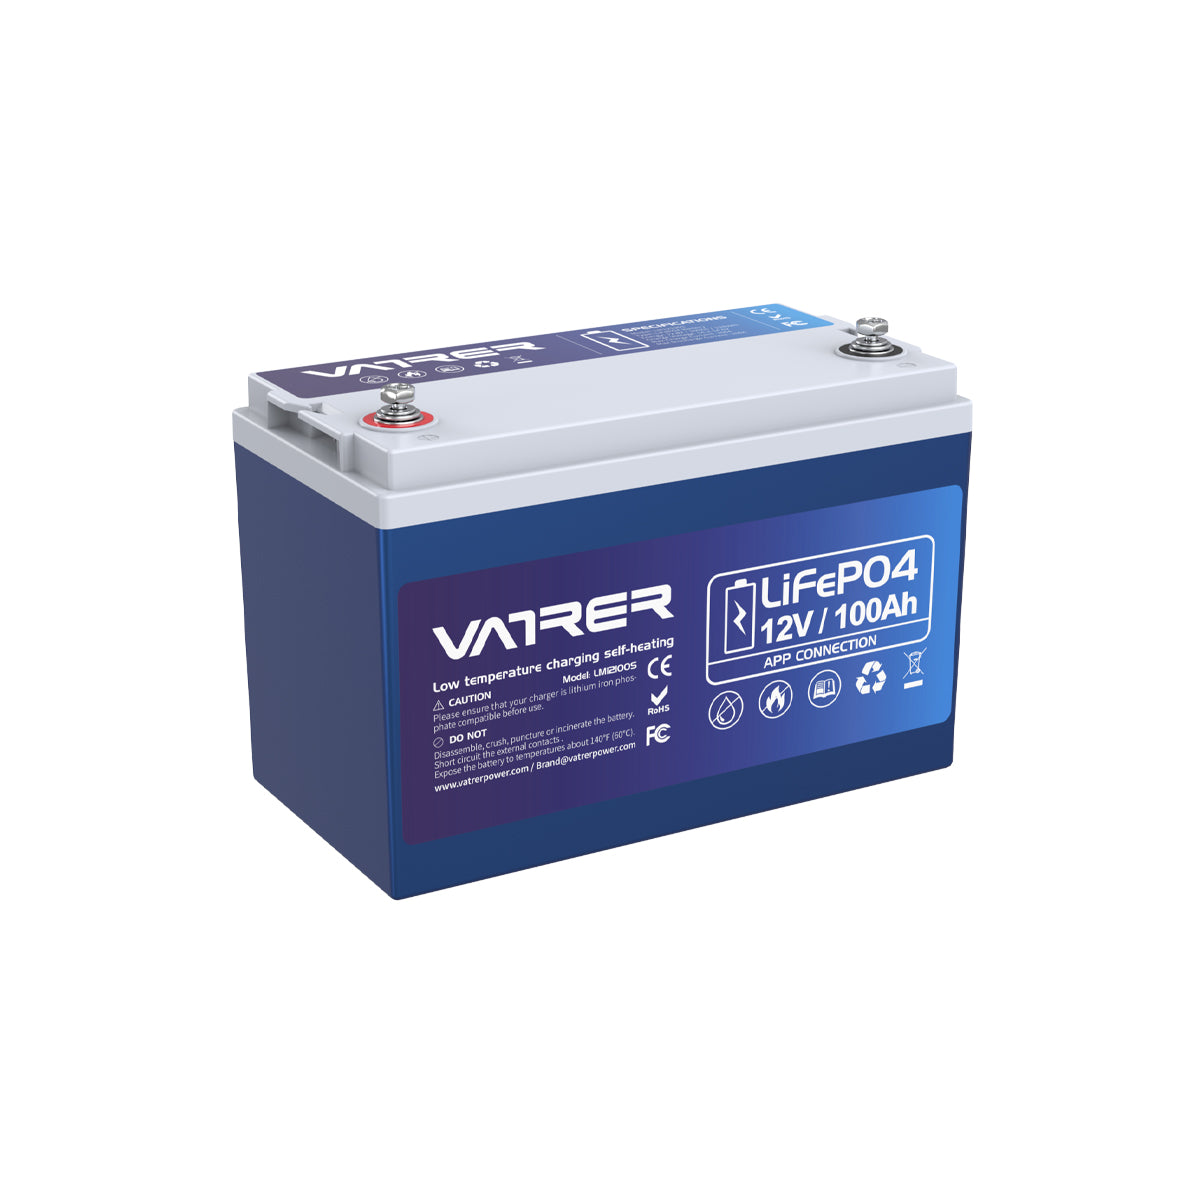 Vatrer 12V 100Ah heated lithium battery 11